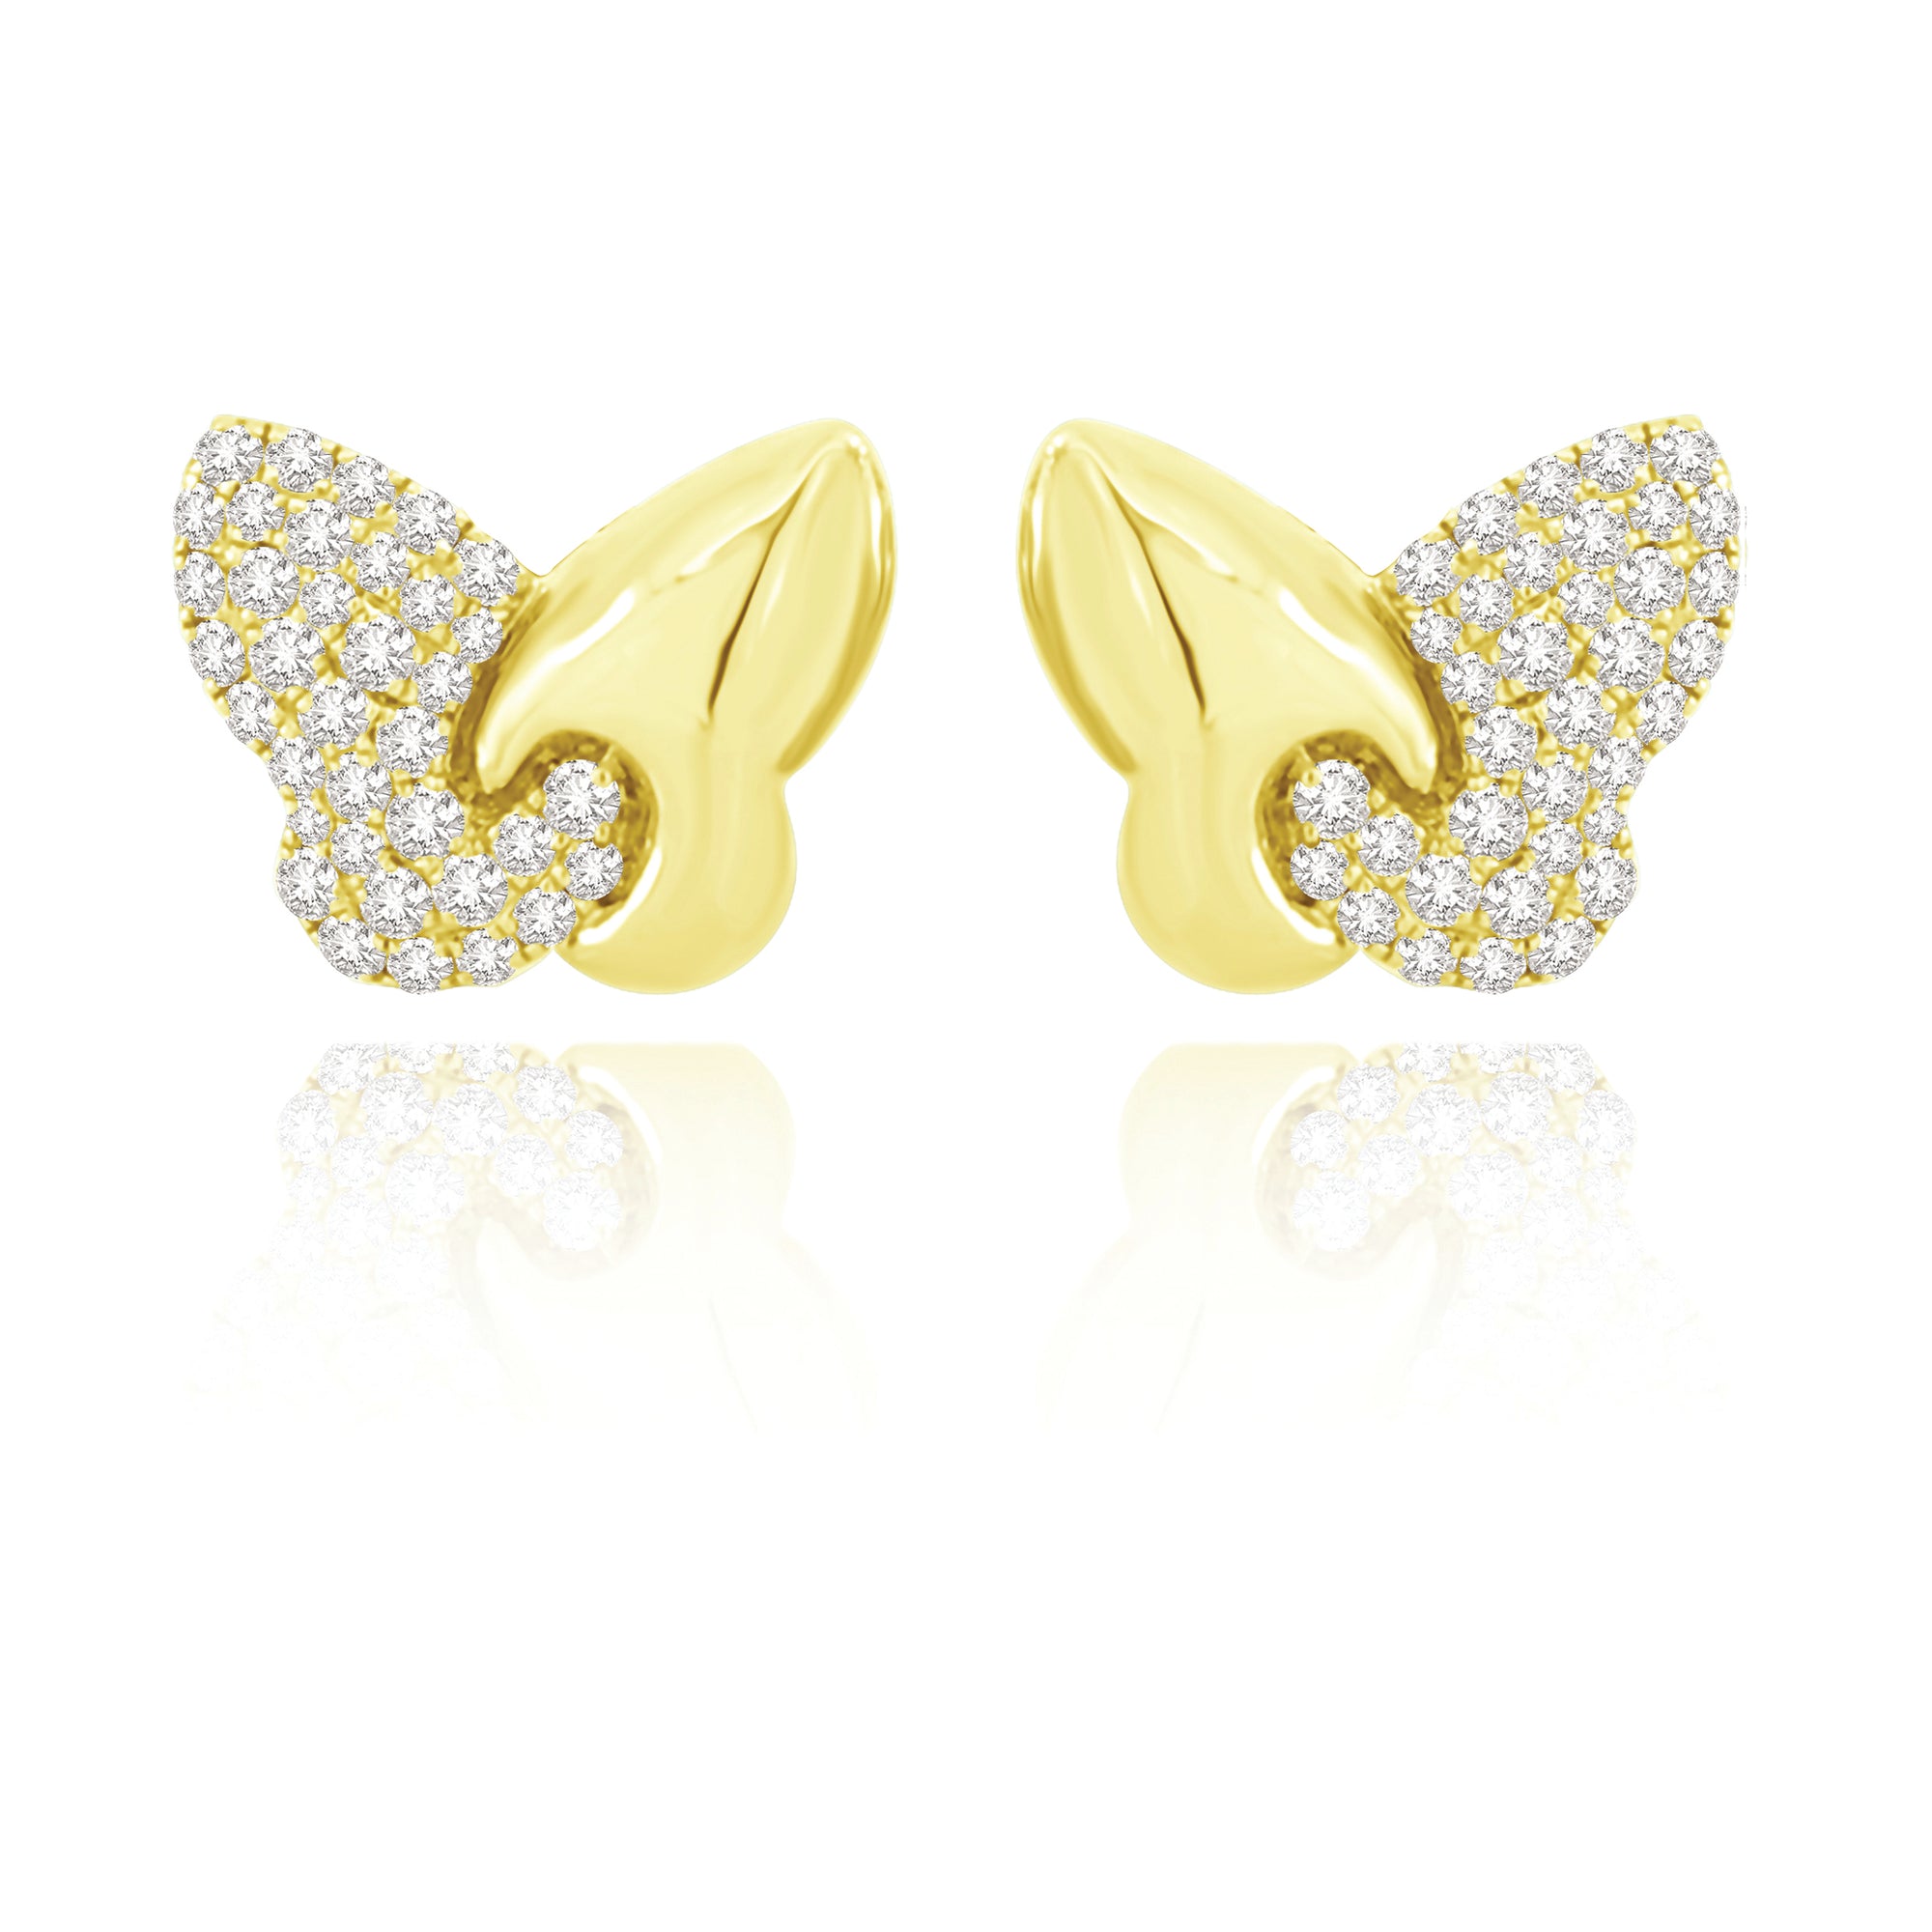 The Butterglow Earrings